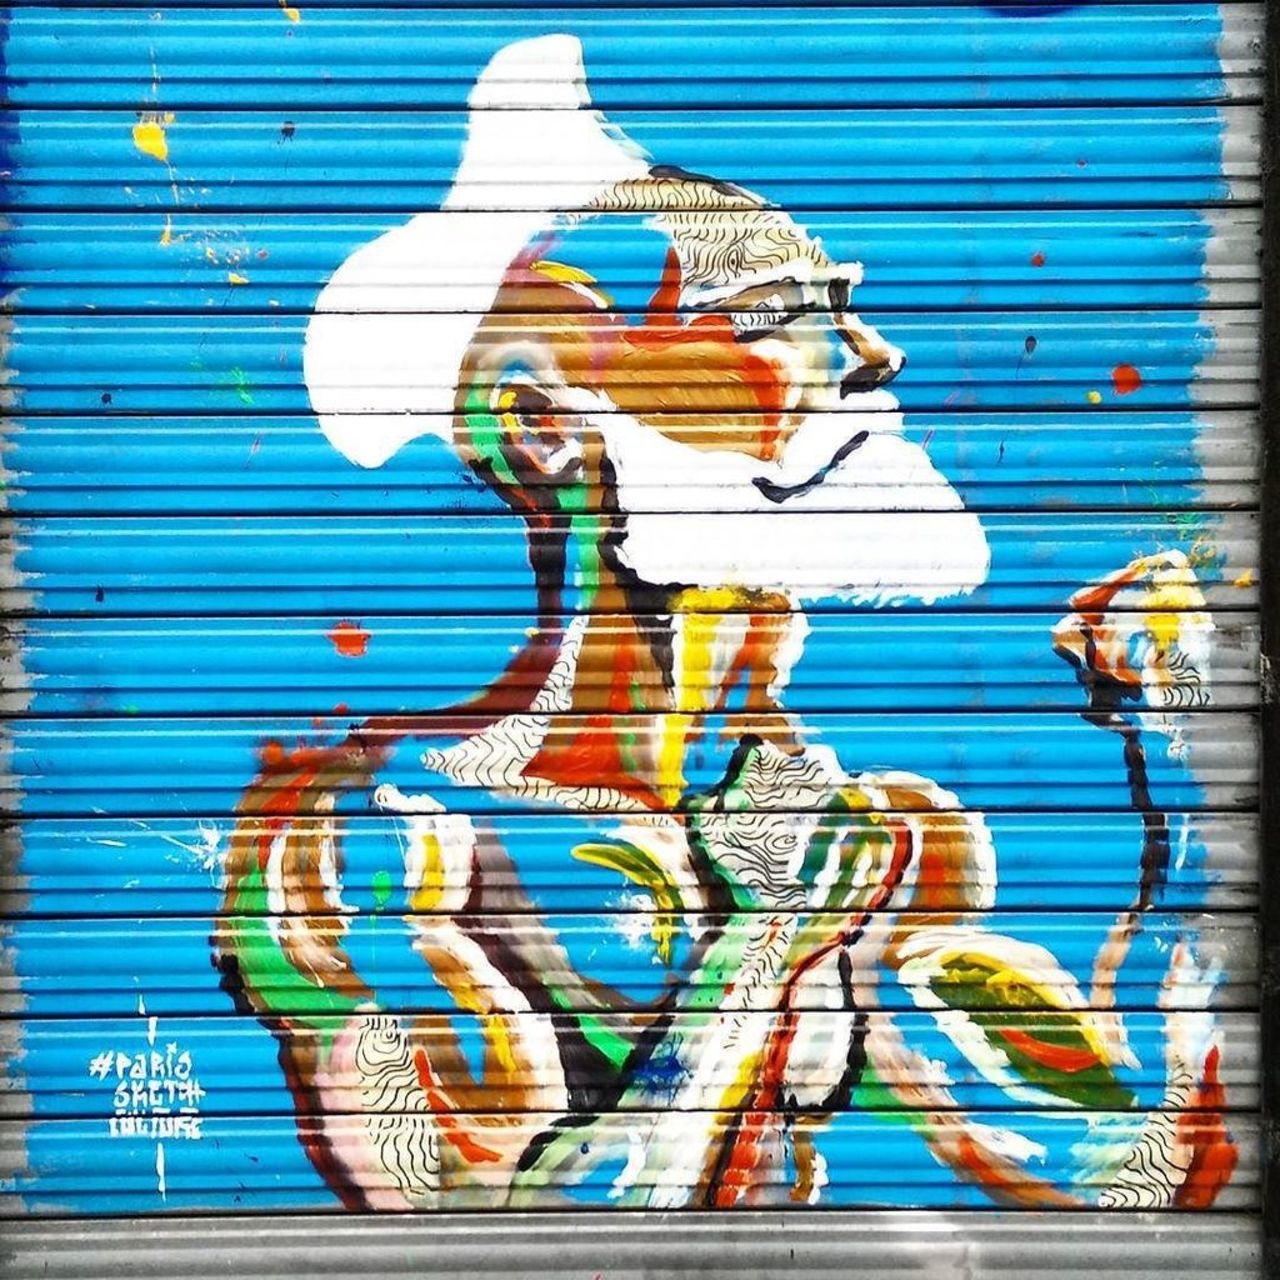 By @parissketchculture #parissketchculture 
#streetart #streetartparis #parisstreetart #parisgraffiti #graffiti #gr… https://t.co/ZedPrGSpHI